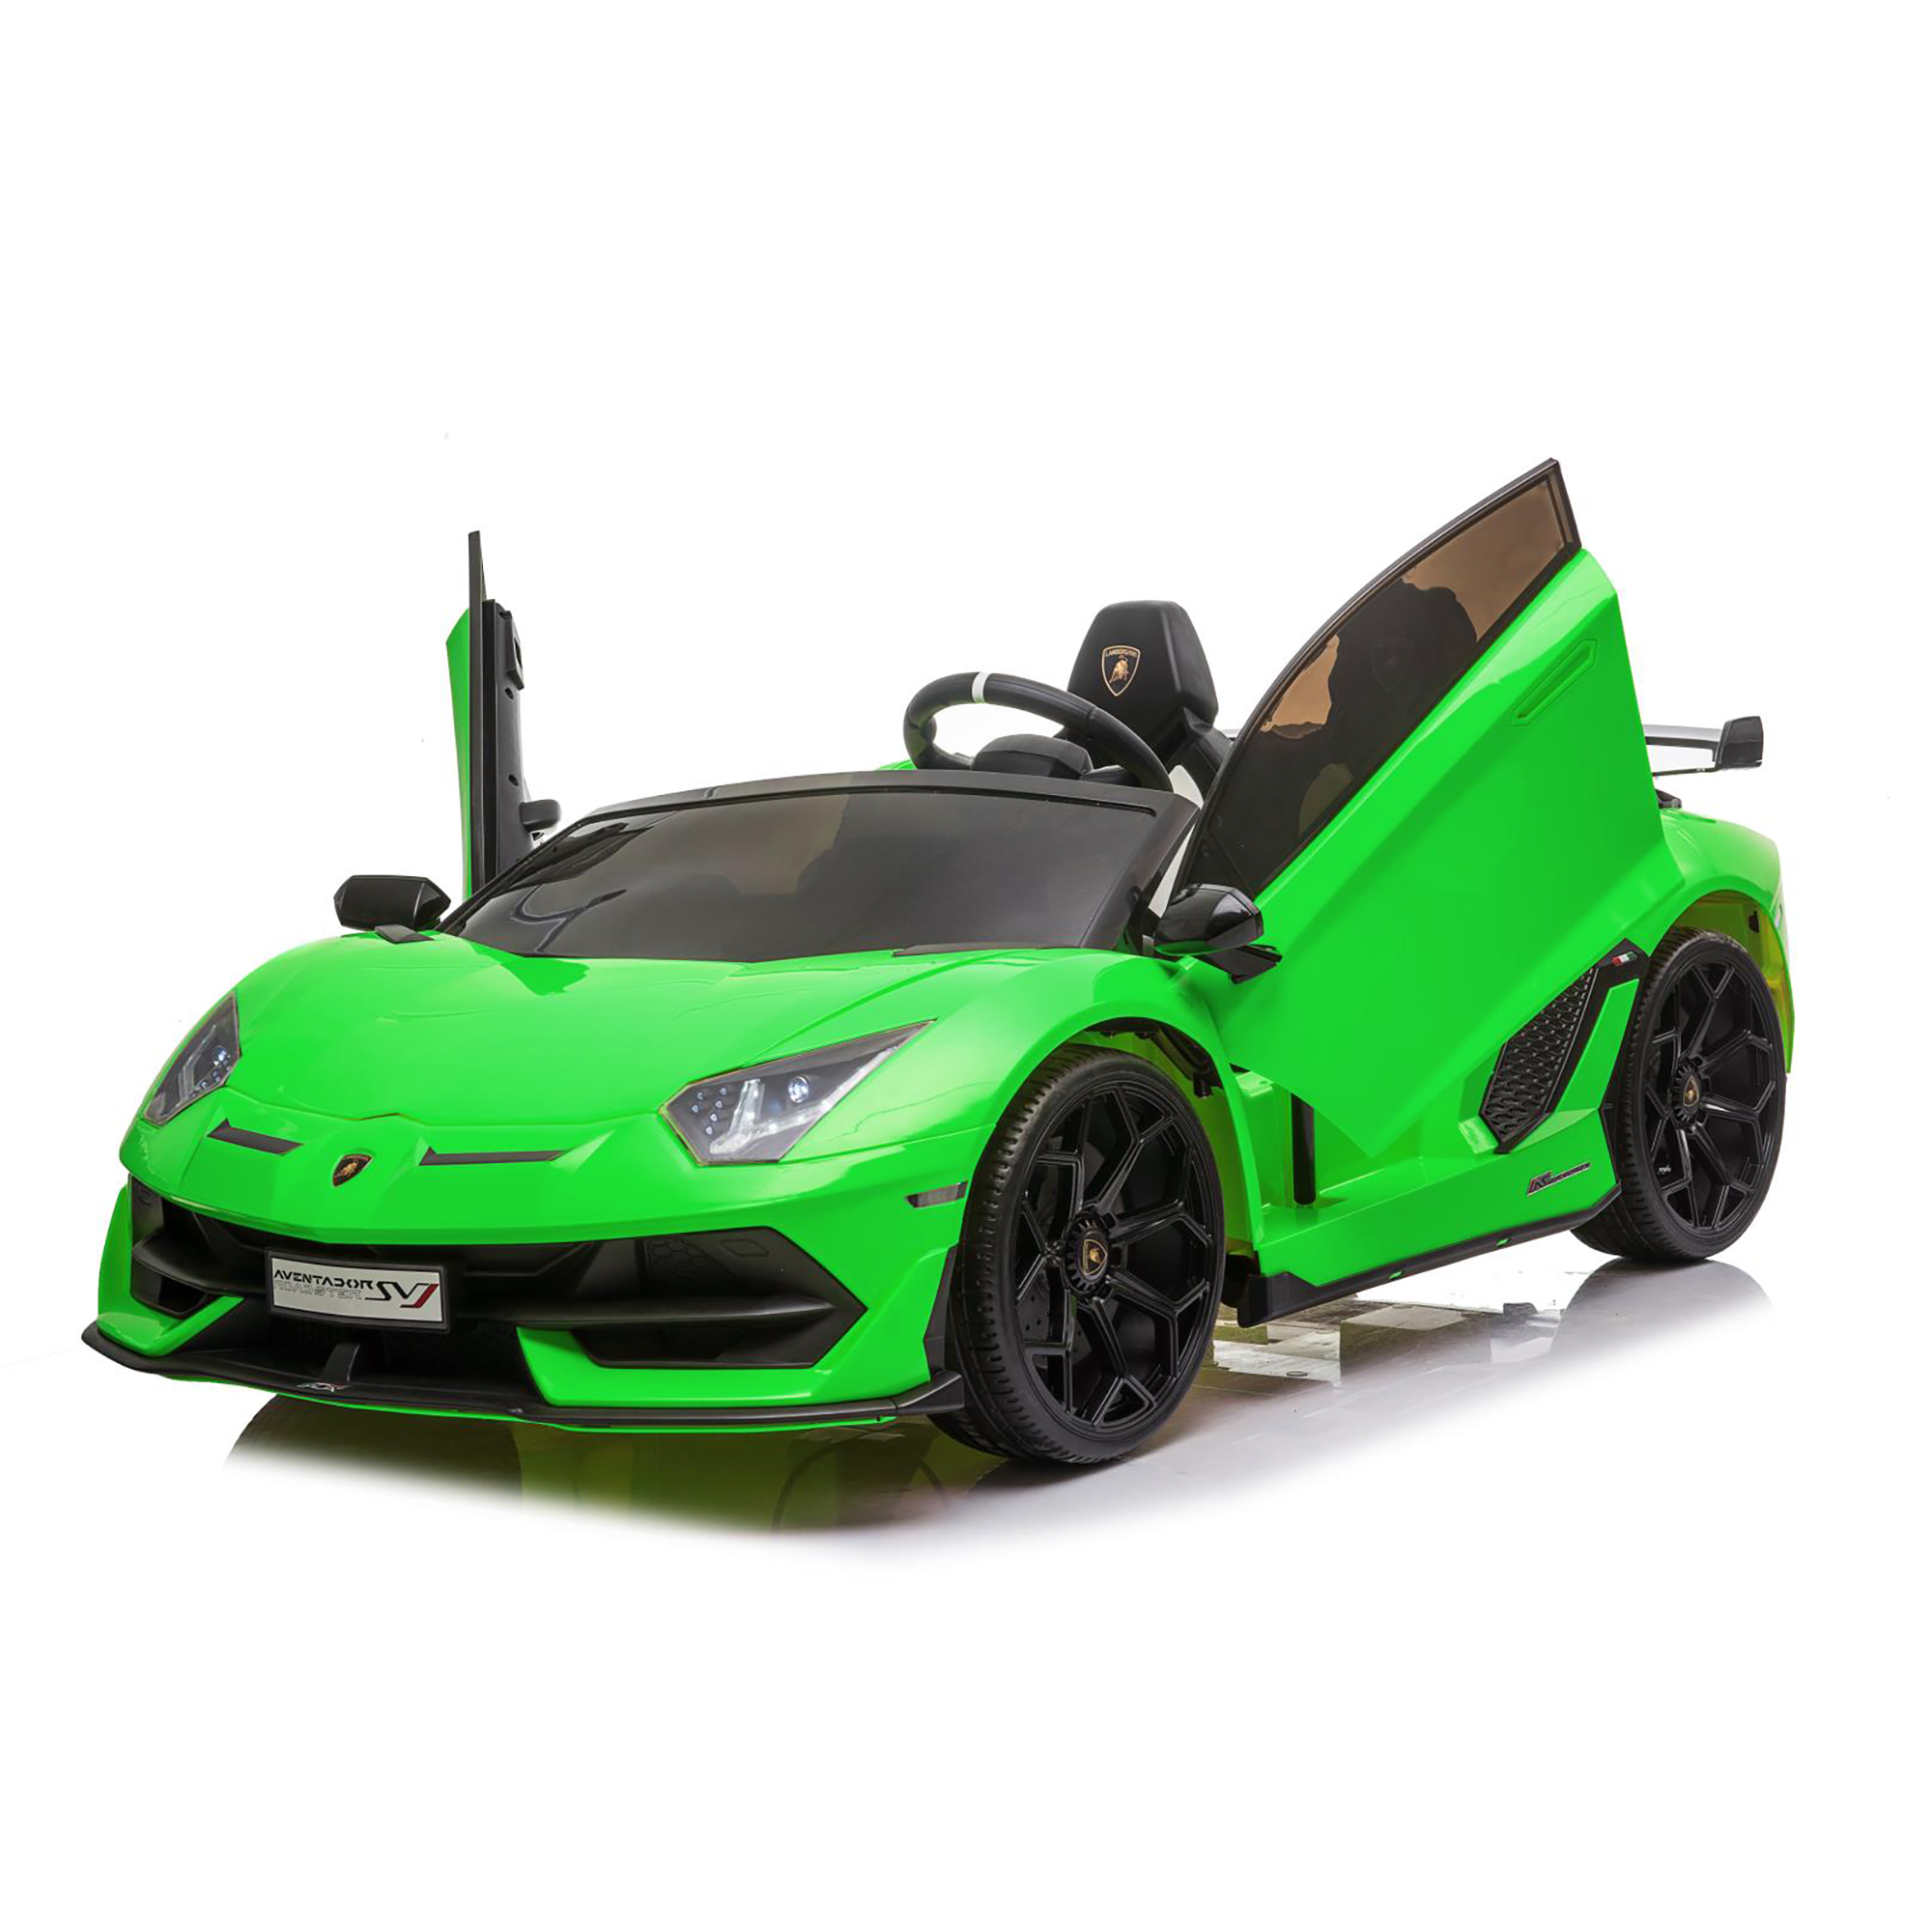 Lamborghini aventador svj roadster elettrica 12v telecomandata per bambini 3-6 anni con 2 velocità massime, fari funzionanti, pulsante start/stop e presa usb - SUN&SPORT